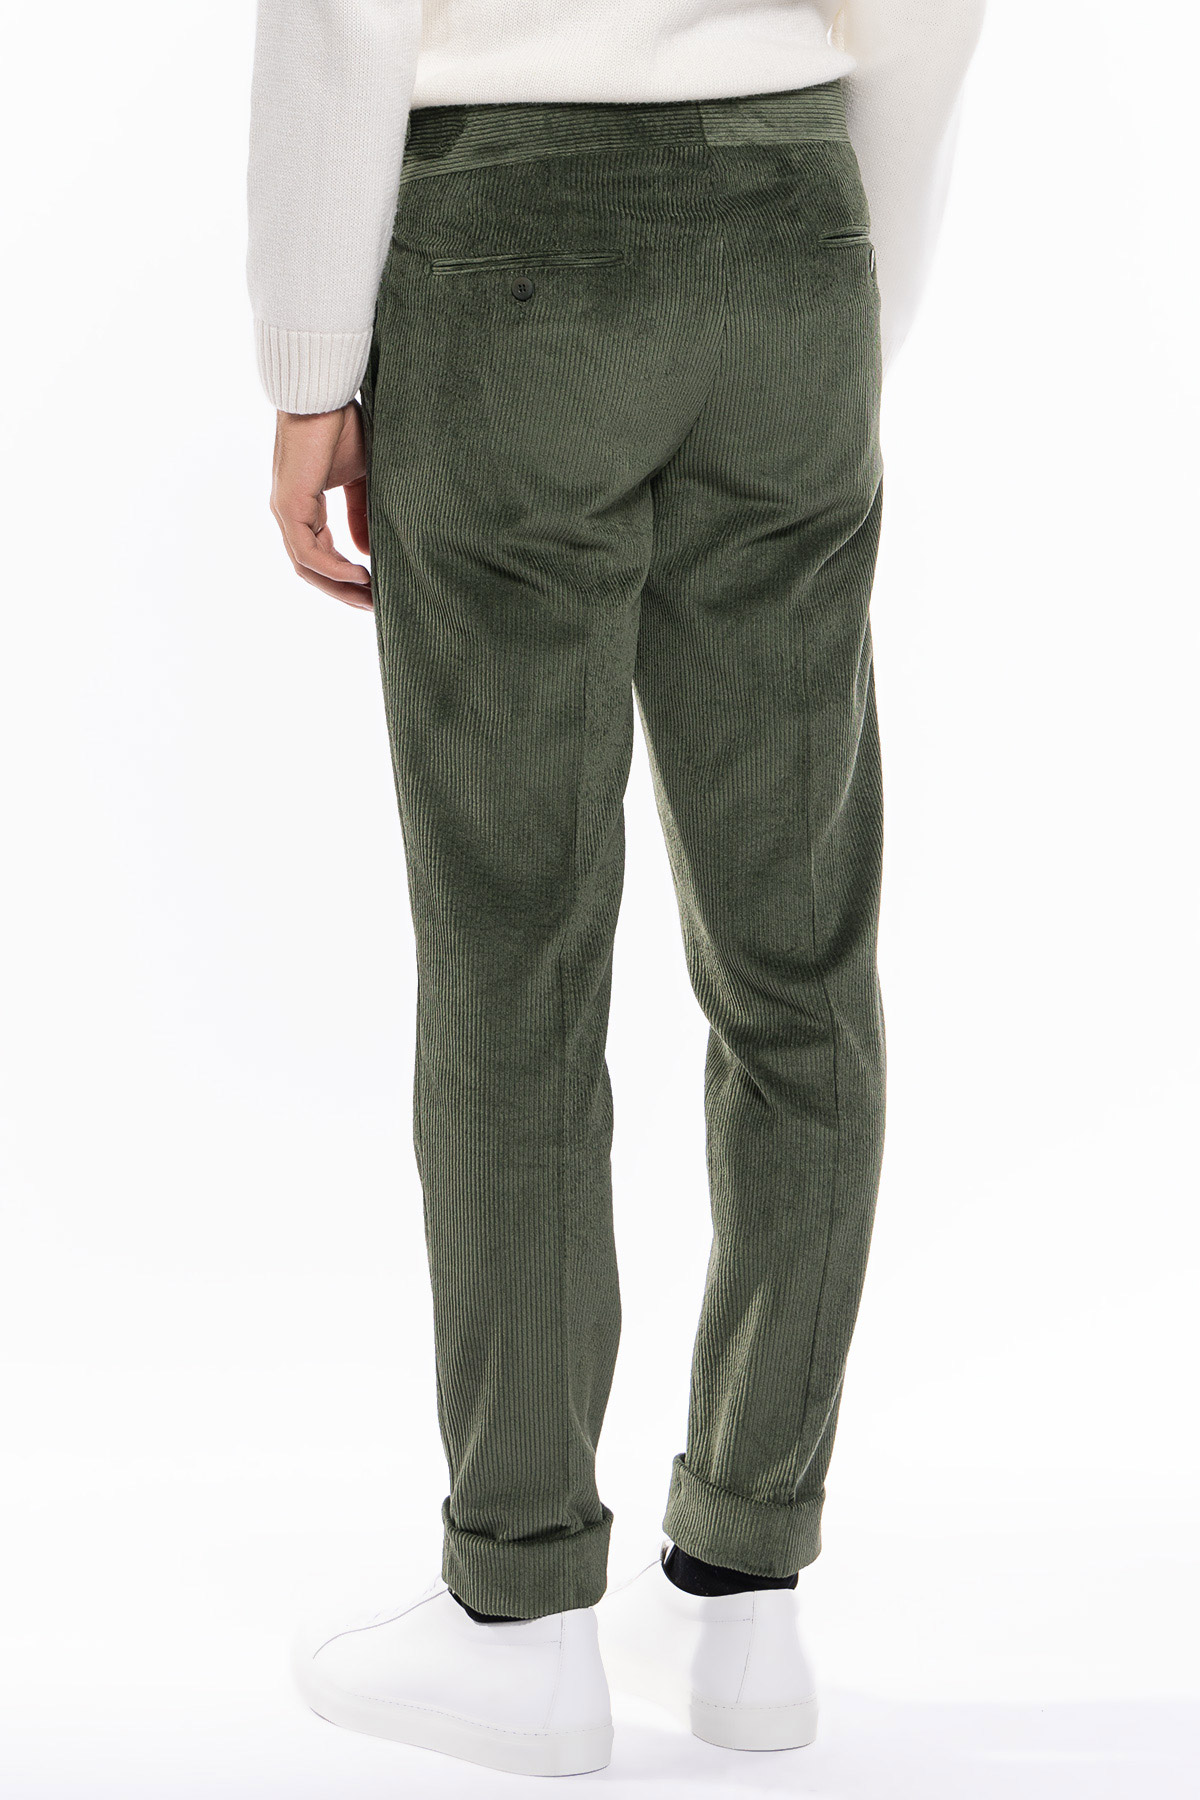 Abito uomo verde militare con giacca monopetto in velluto a costine strette e pantalone vita alta cinturino biforcato